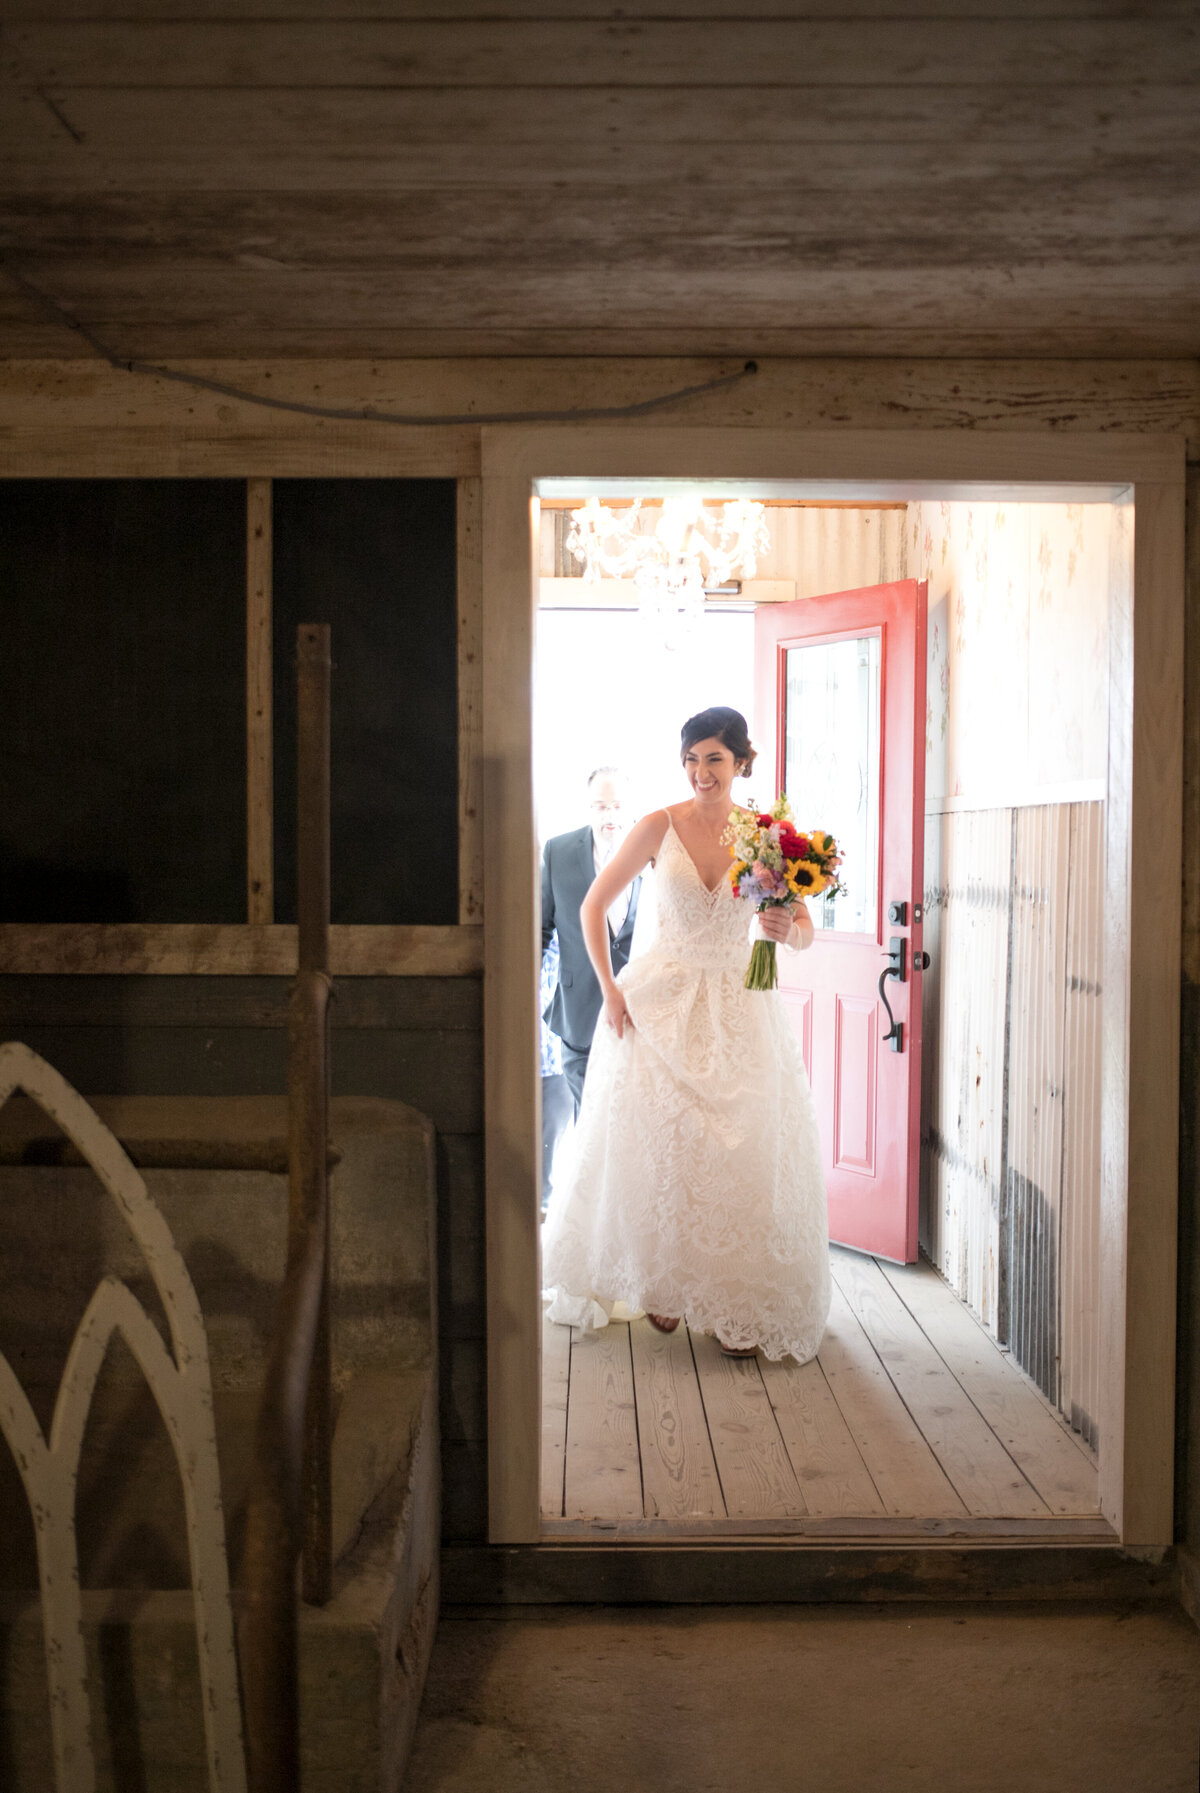 A bride walking through the dairy barn on wedding day